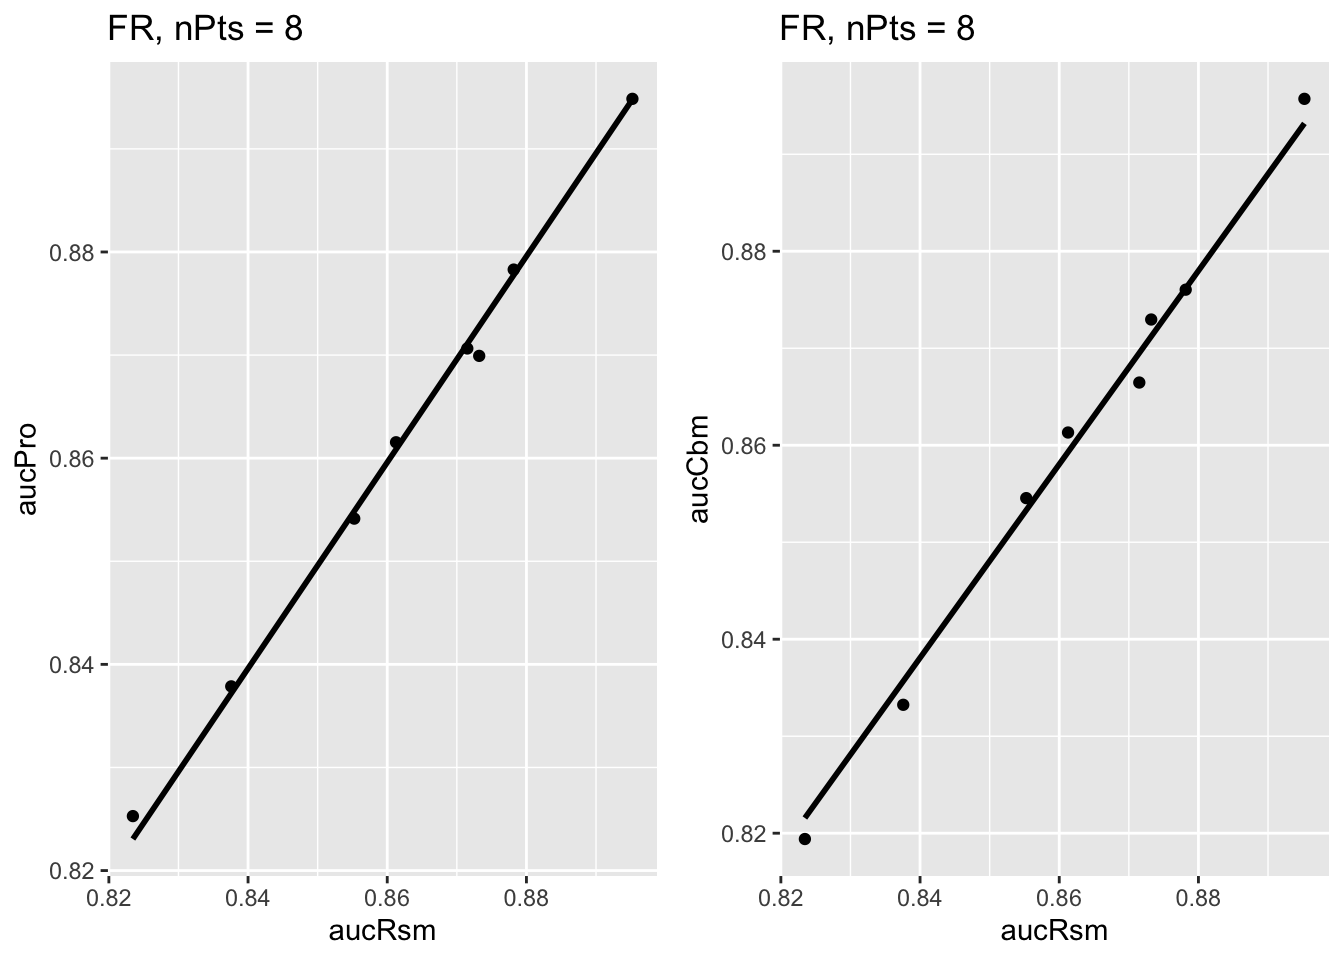 Similar to previous plot, for Franken dataset.